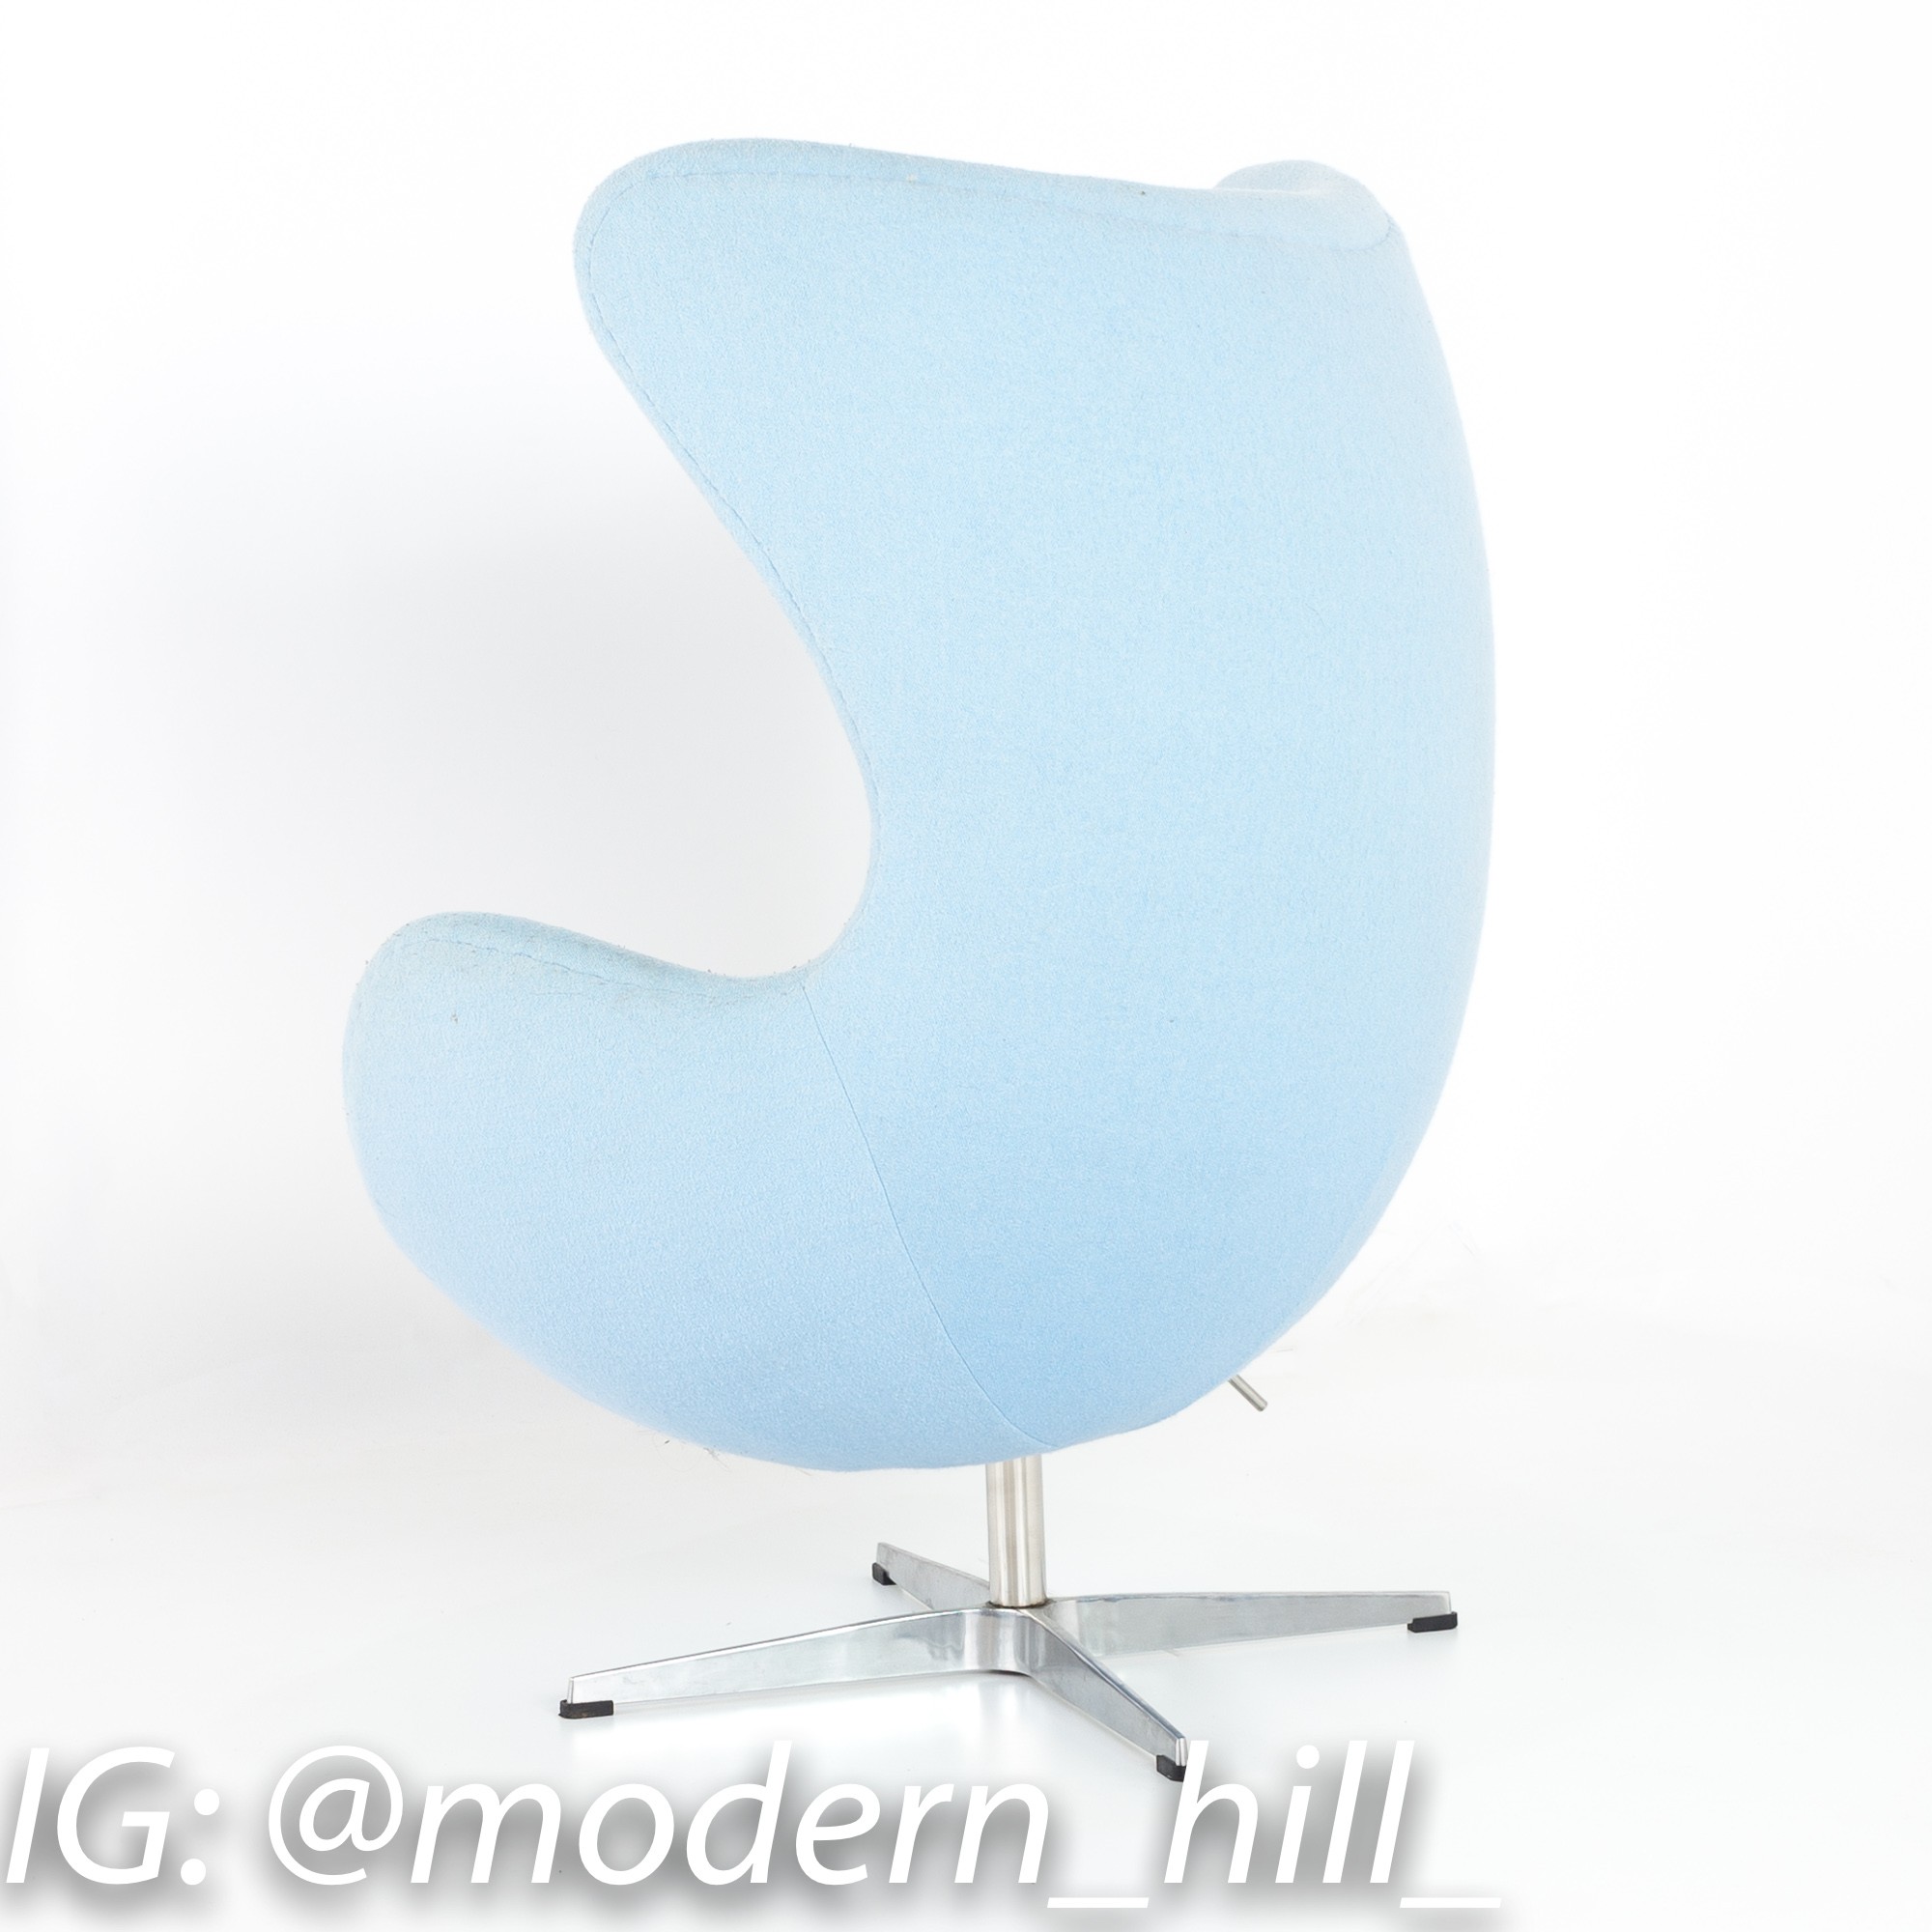 Arne Jacobsen for Fritz Hansen Style Mid Century Modern Egg Chair